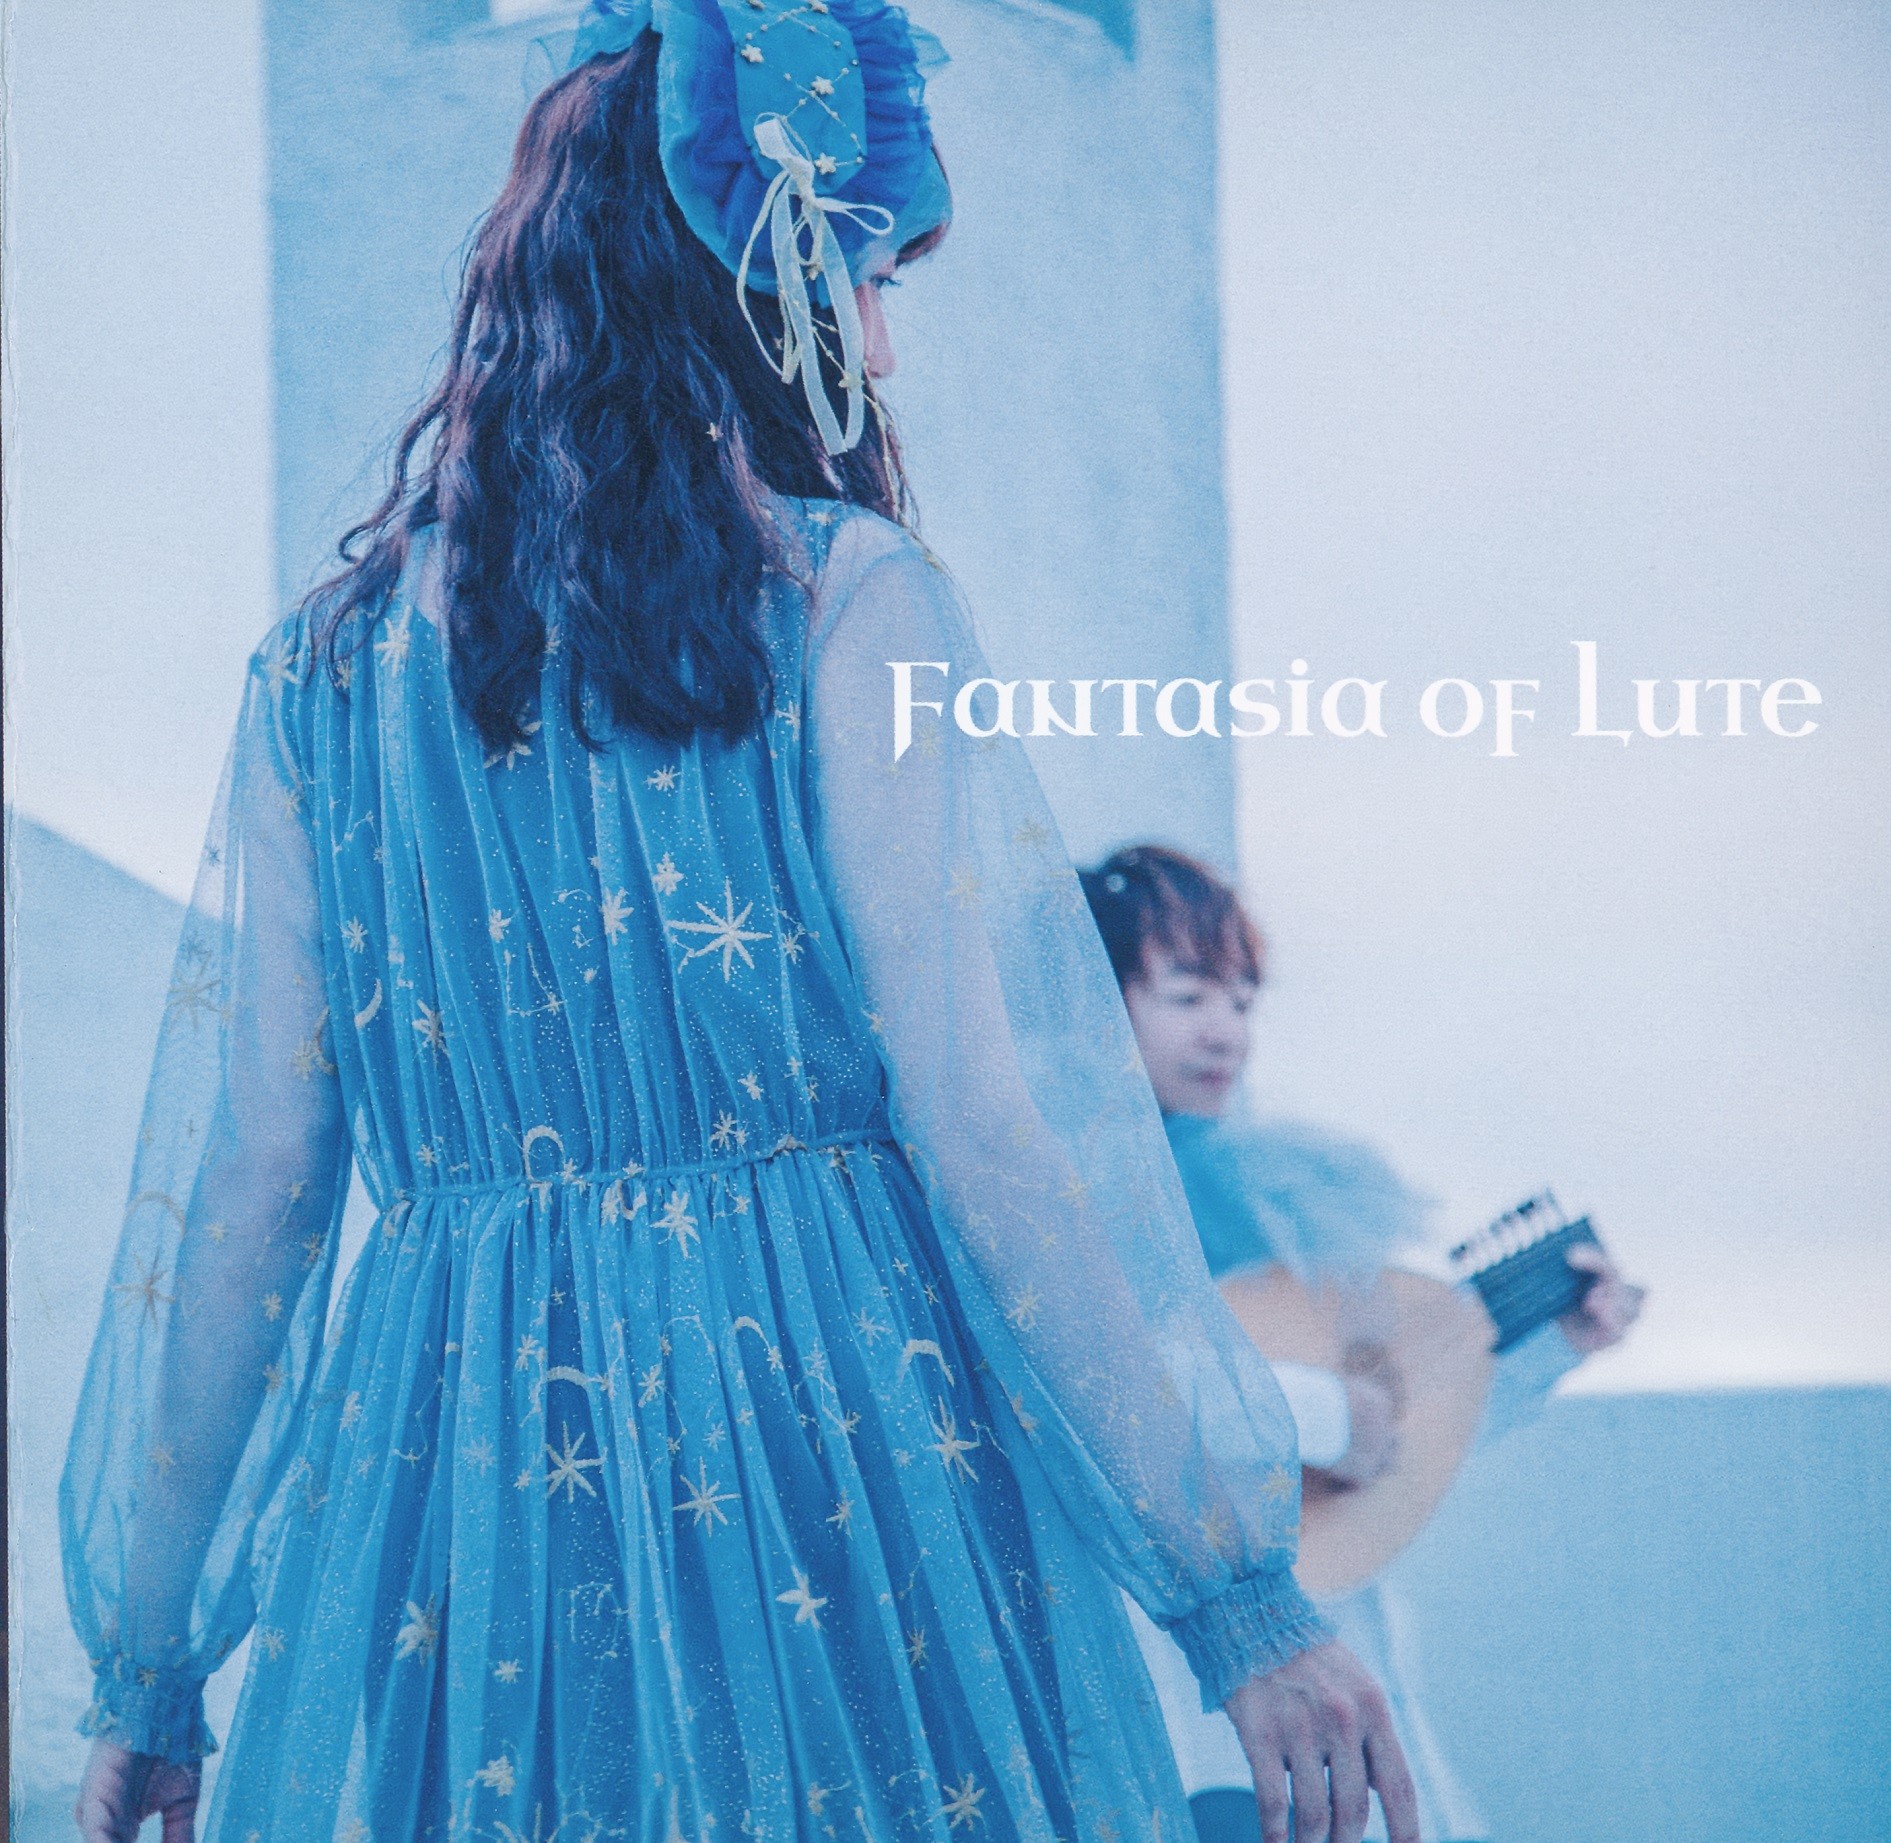 月猫とリュート (Tsukineko Lute) – Fantasia of Lute [FLAC + MP3 320 / CD] [2019.04.28]